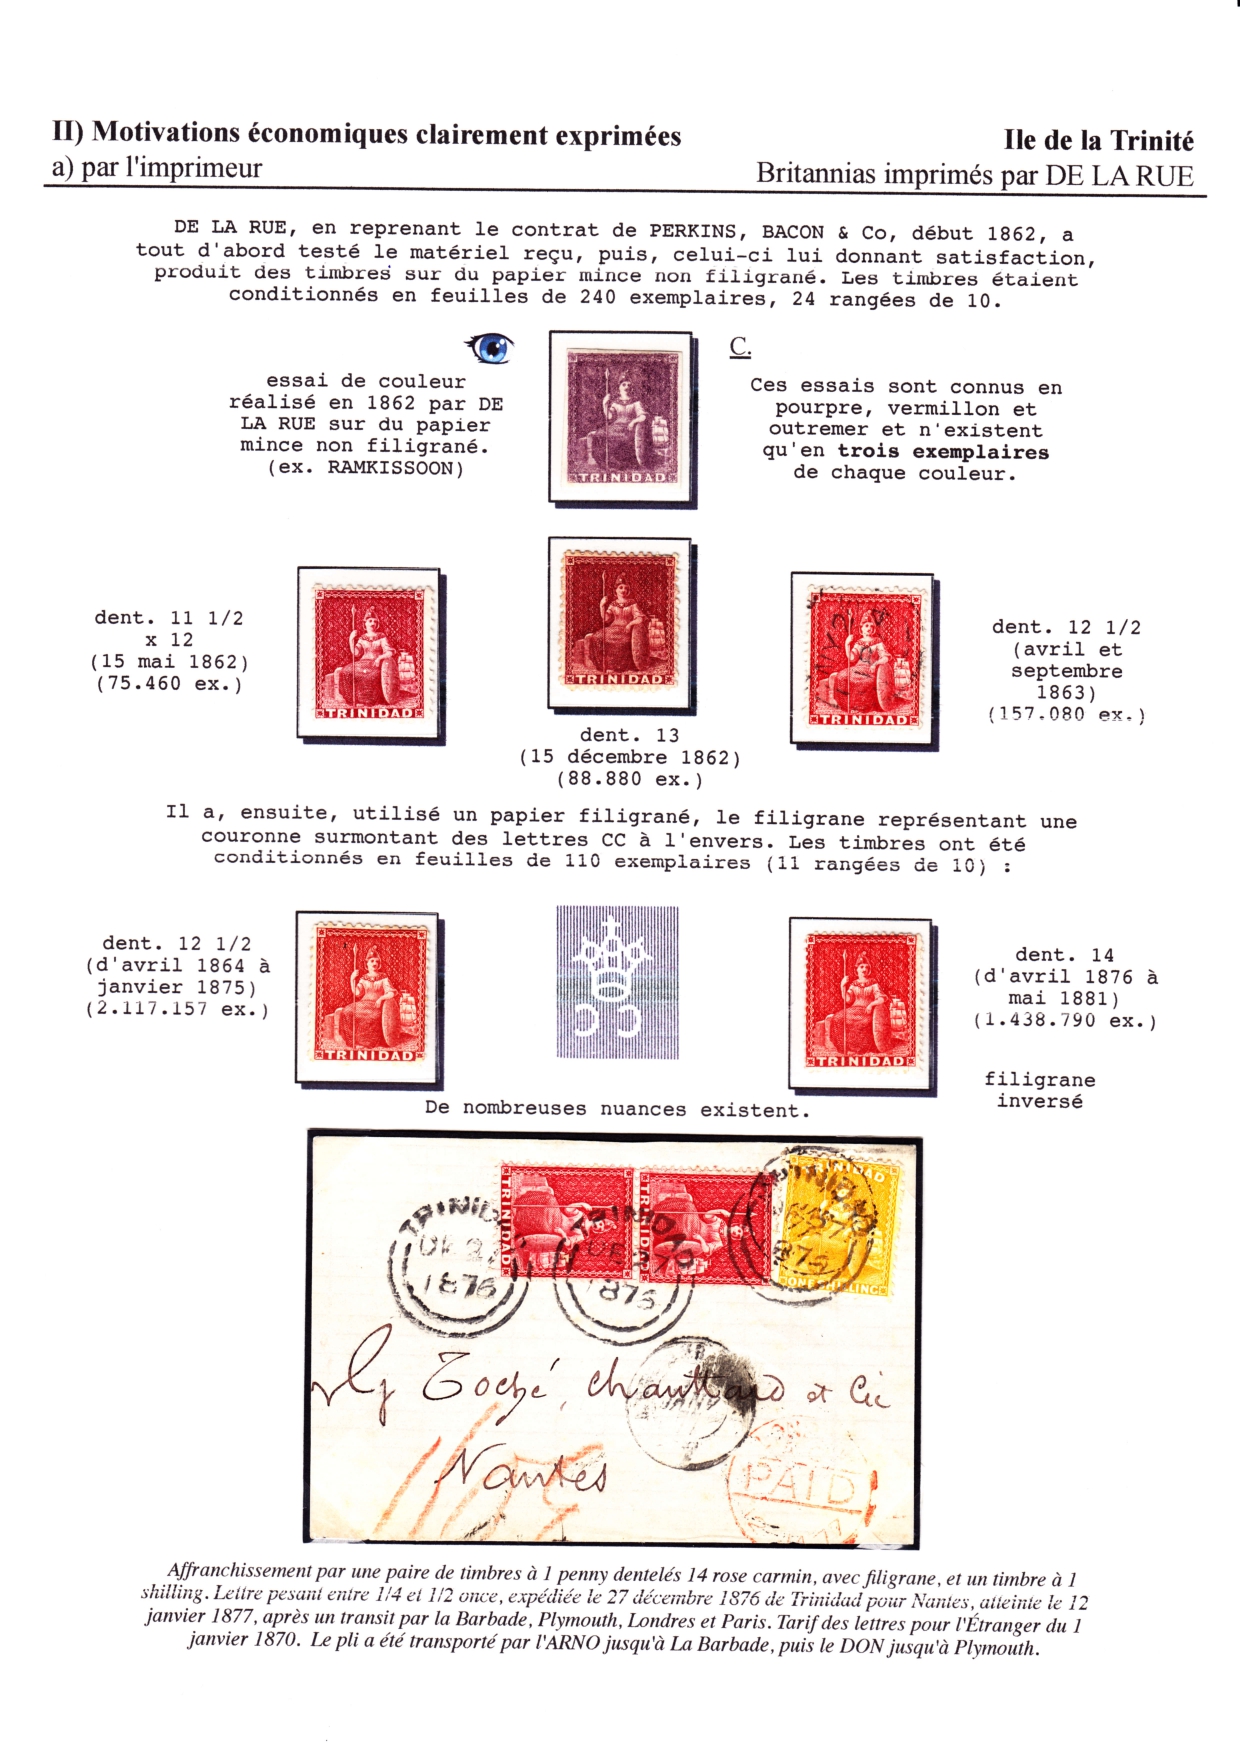 Les d��buts des timbres sans valeur faciale apparente p. 29